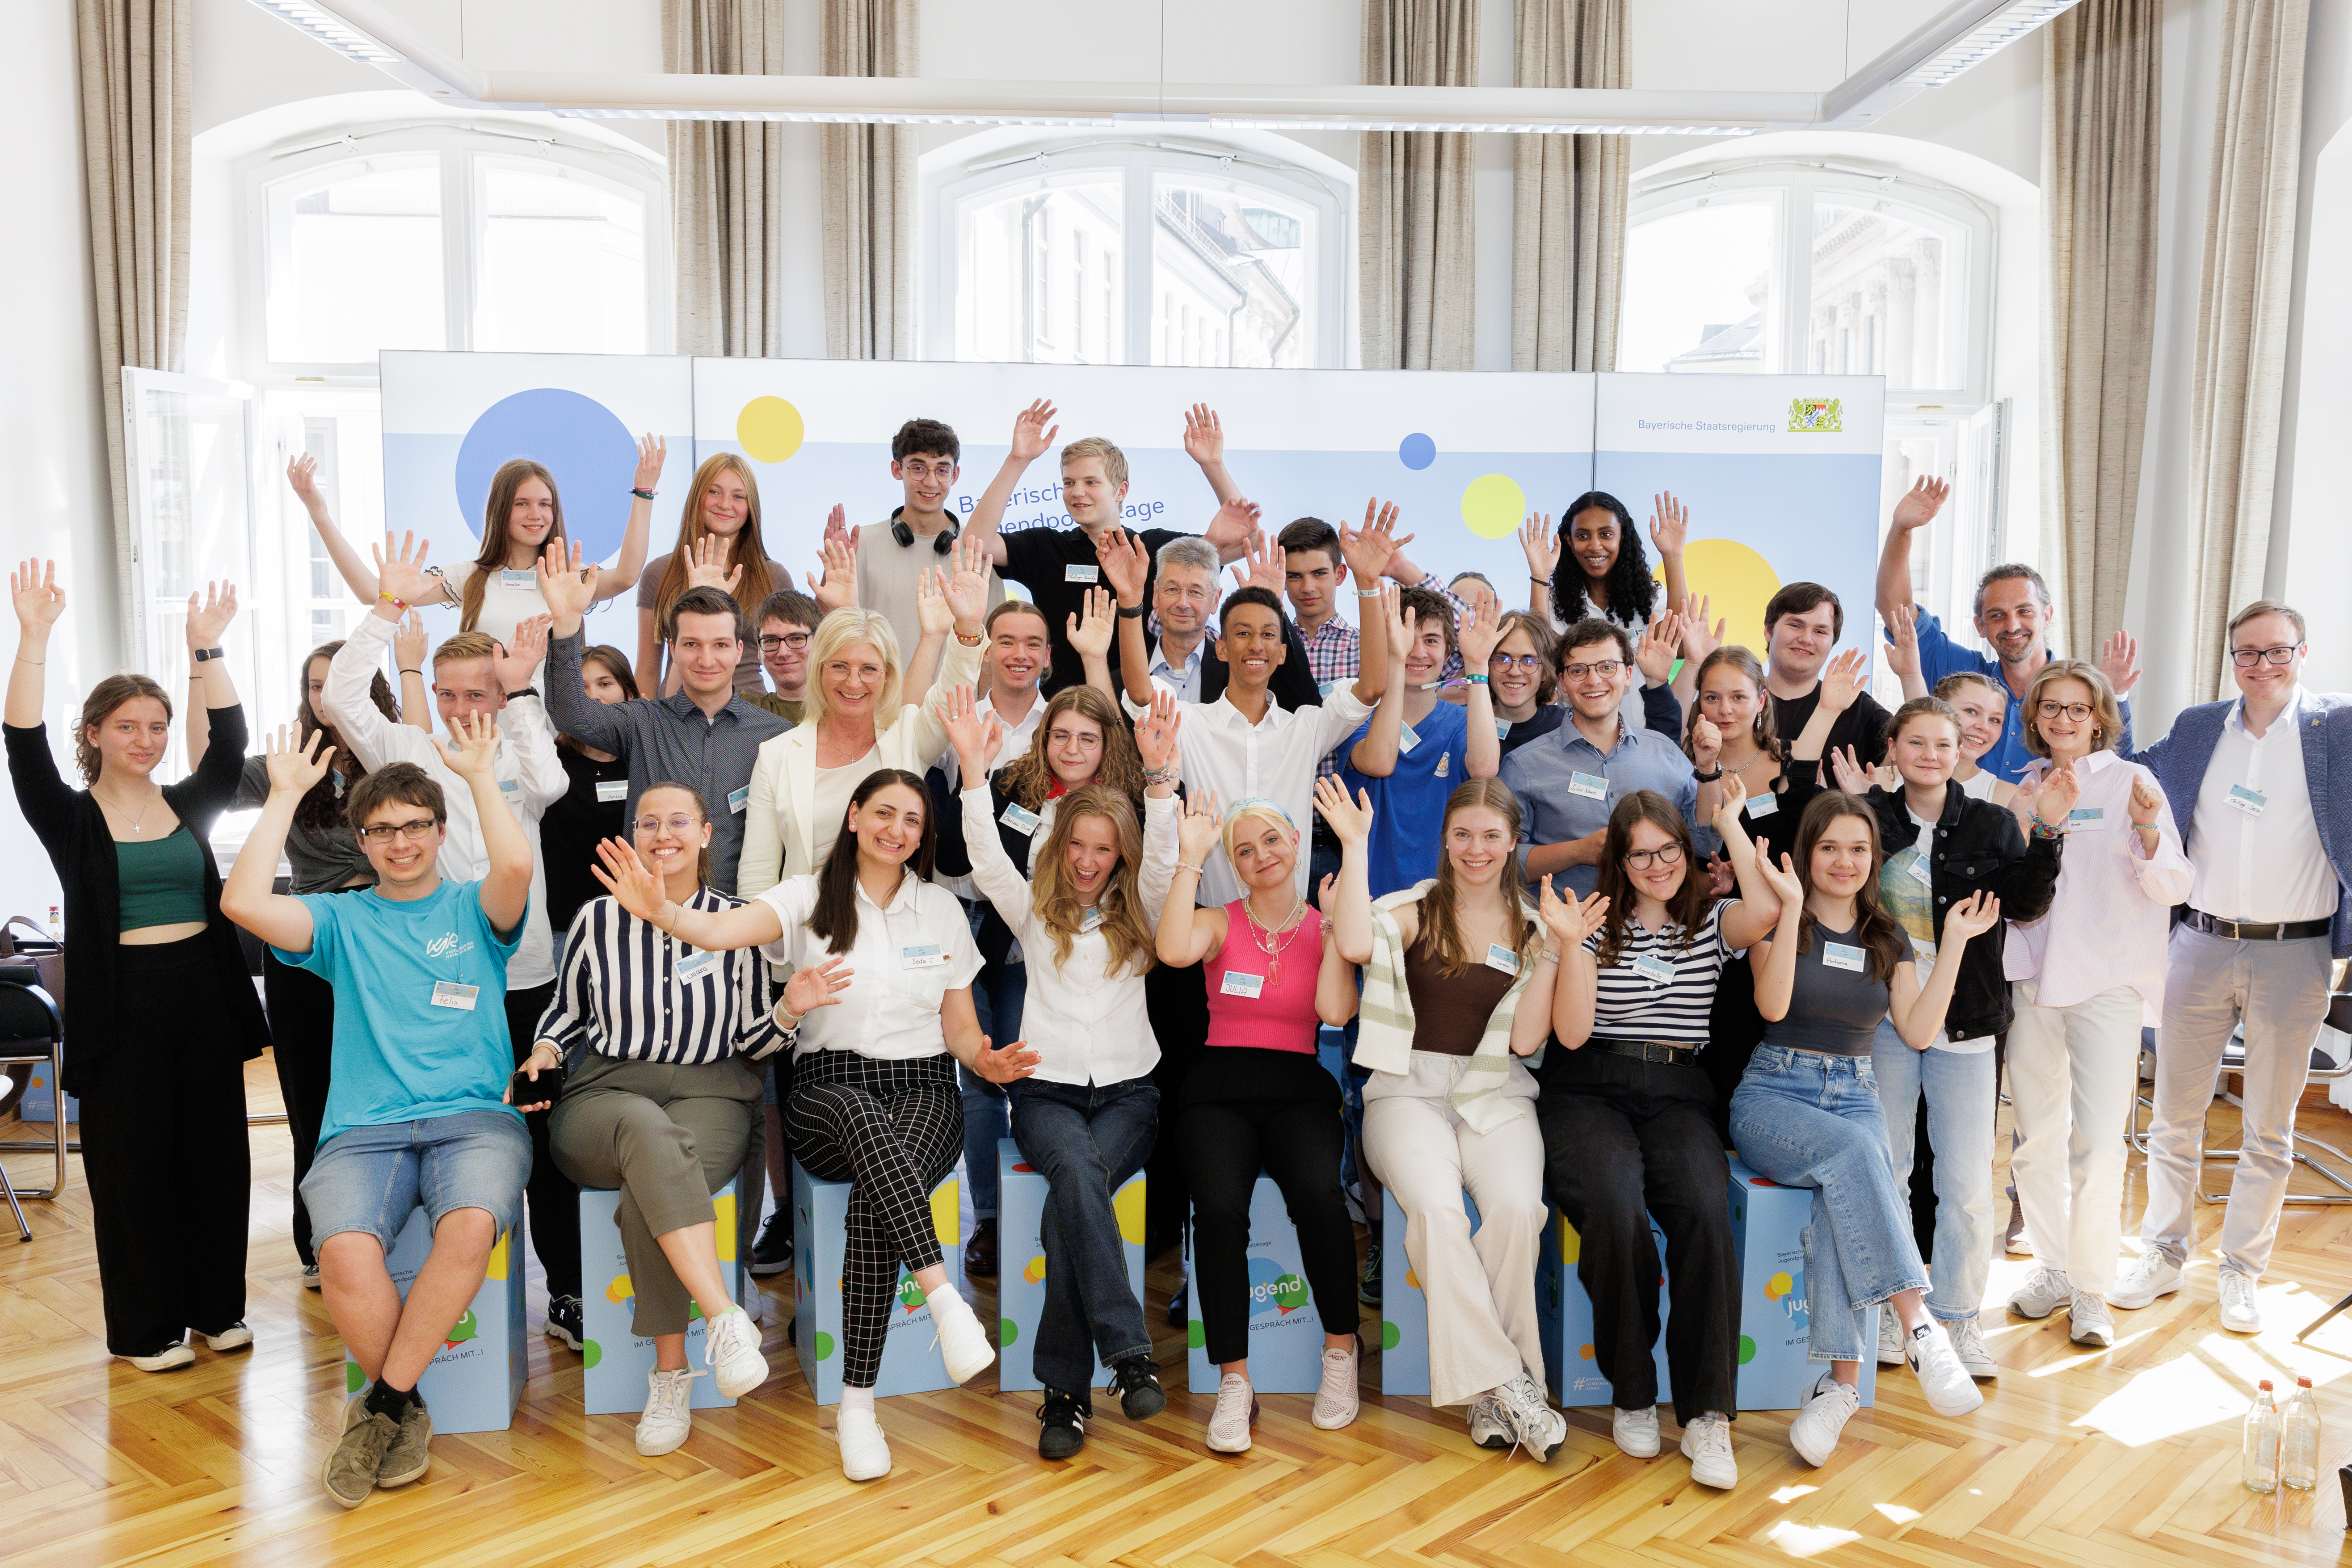 Vergrößerungsansichten für Bild: Gruppenbild aller Teilnehmenden an den Bayerischen Jugendpolitiktagen im Kultusministerium